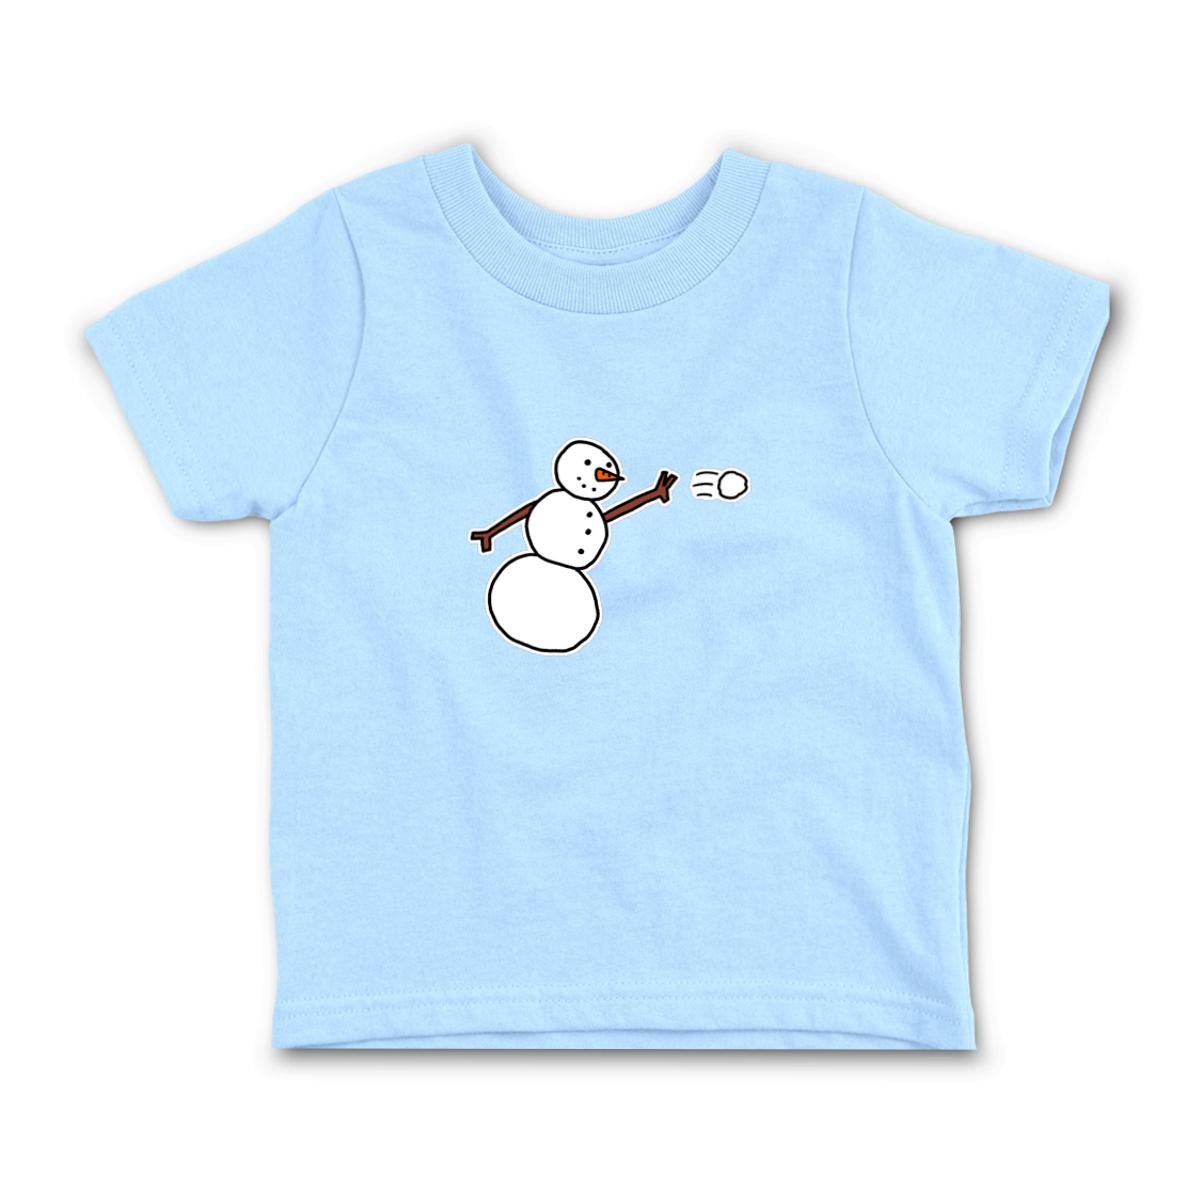 Snowman Throwing Snowball Toddler Tee 56T light-blue